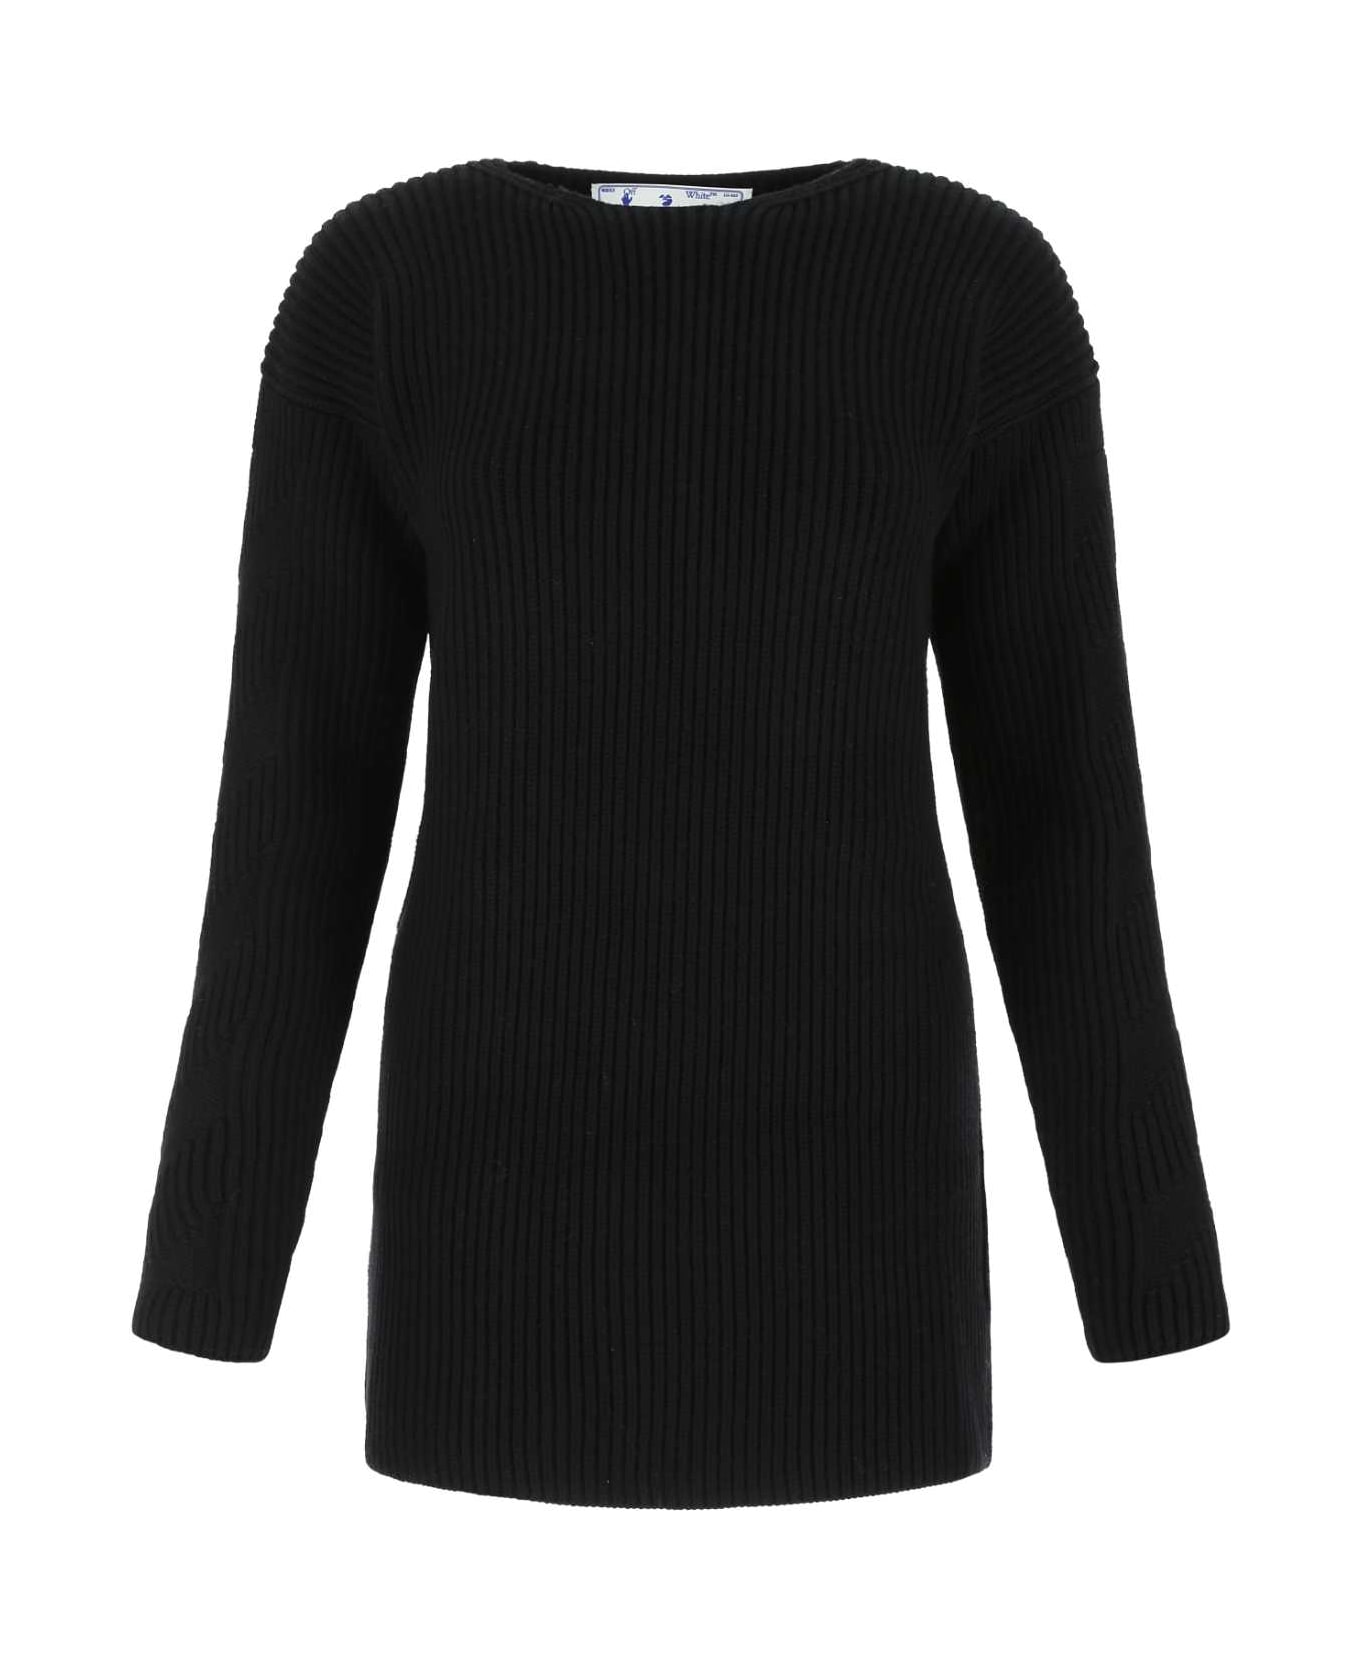 Off-White Black Wool Sweater - 1000 ニットウェア